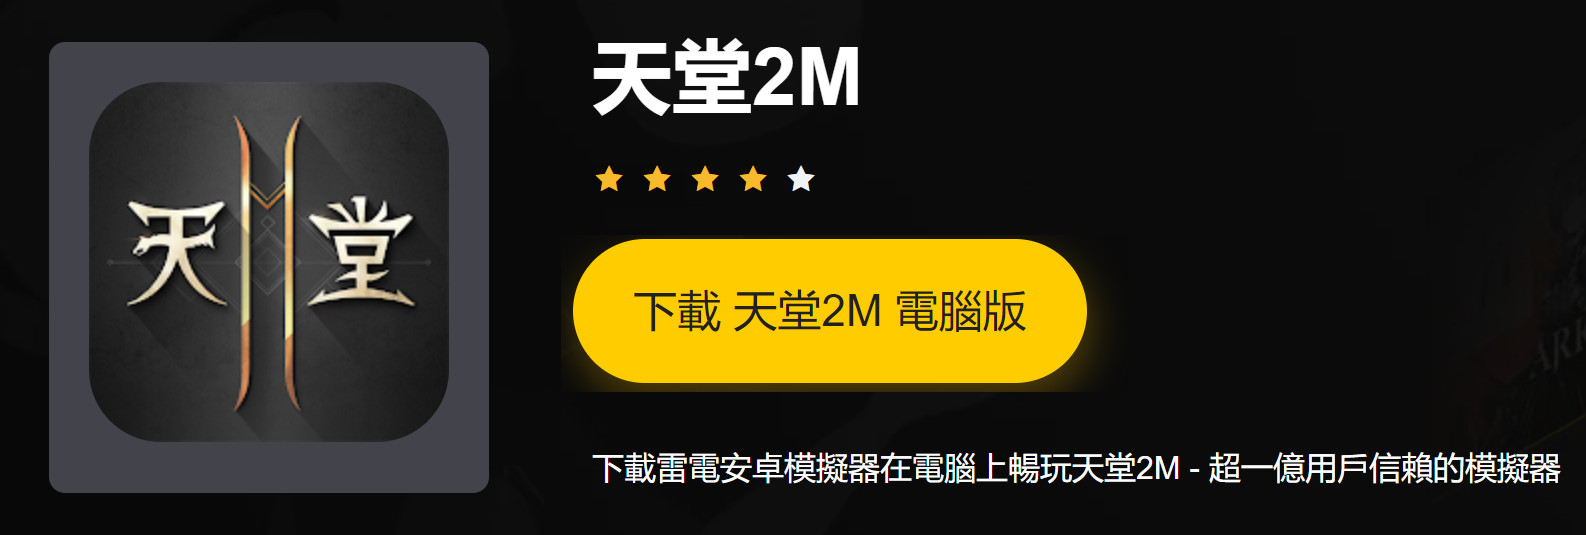 《天堂2M》3月24日上線 雷電輔助練功更自由 - 天堂2M - 敗家達人推薦